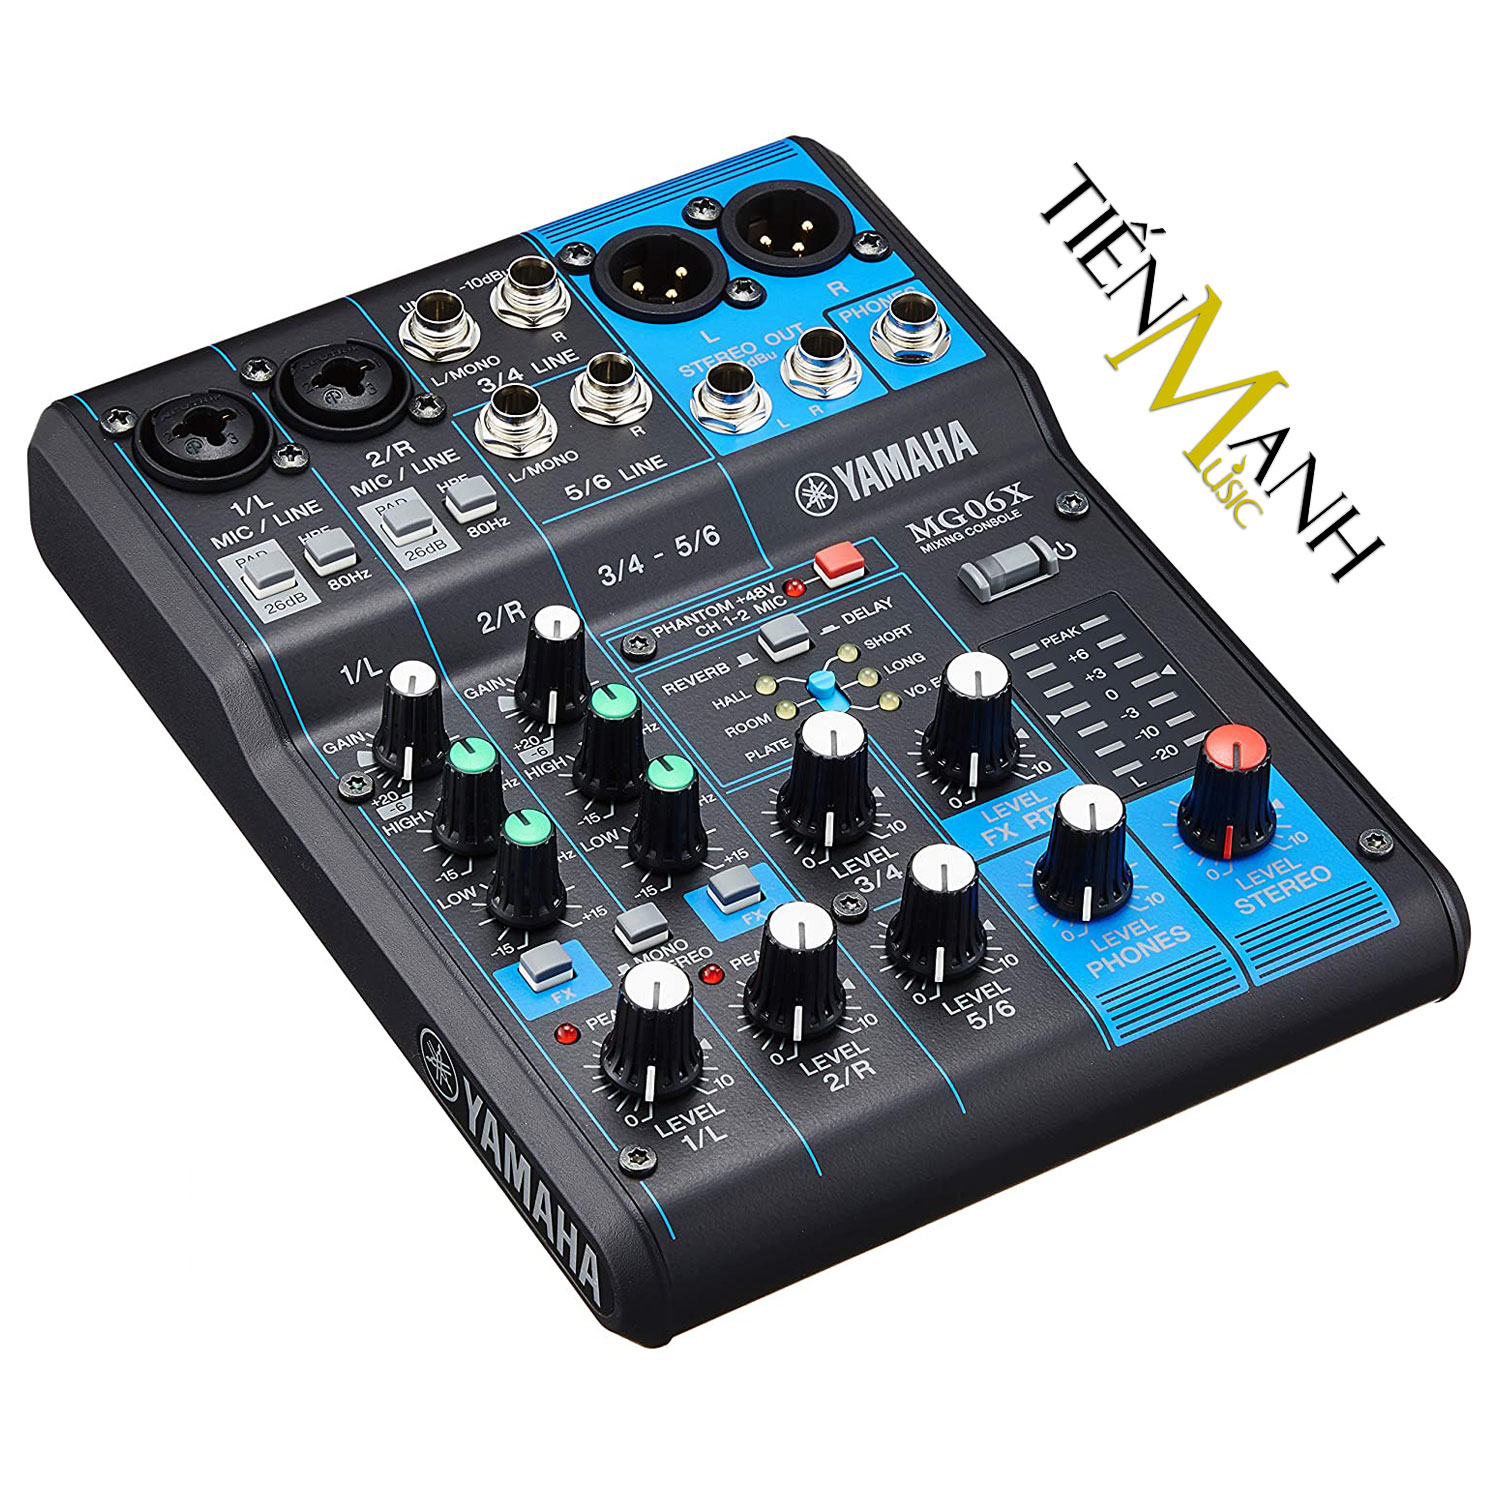 Bàn Trộn Yamaha MG06X Mixer Mini 6 Input Compact Stereo Mixing Console MG06 Phòng Thu Studio Mix MG6 Hàng Chính Hãng - Kèm Móng Gẩy DreamMaker